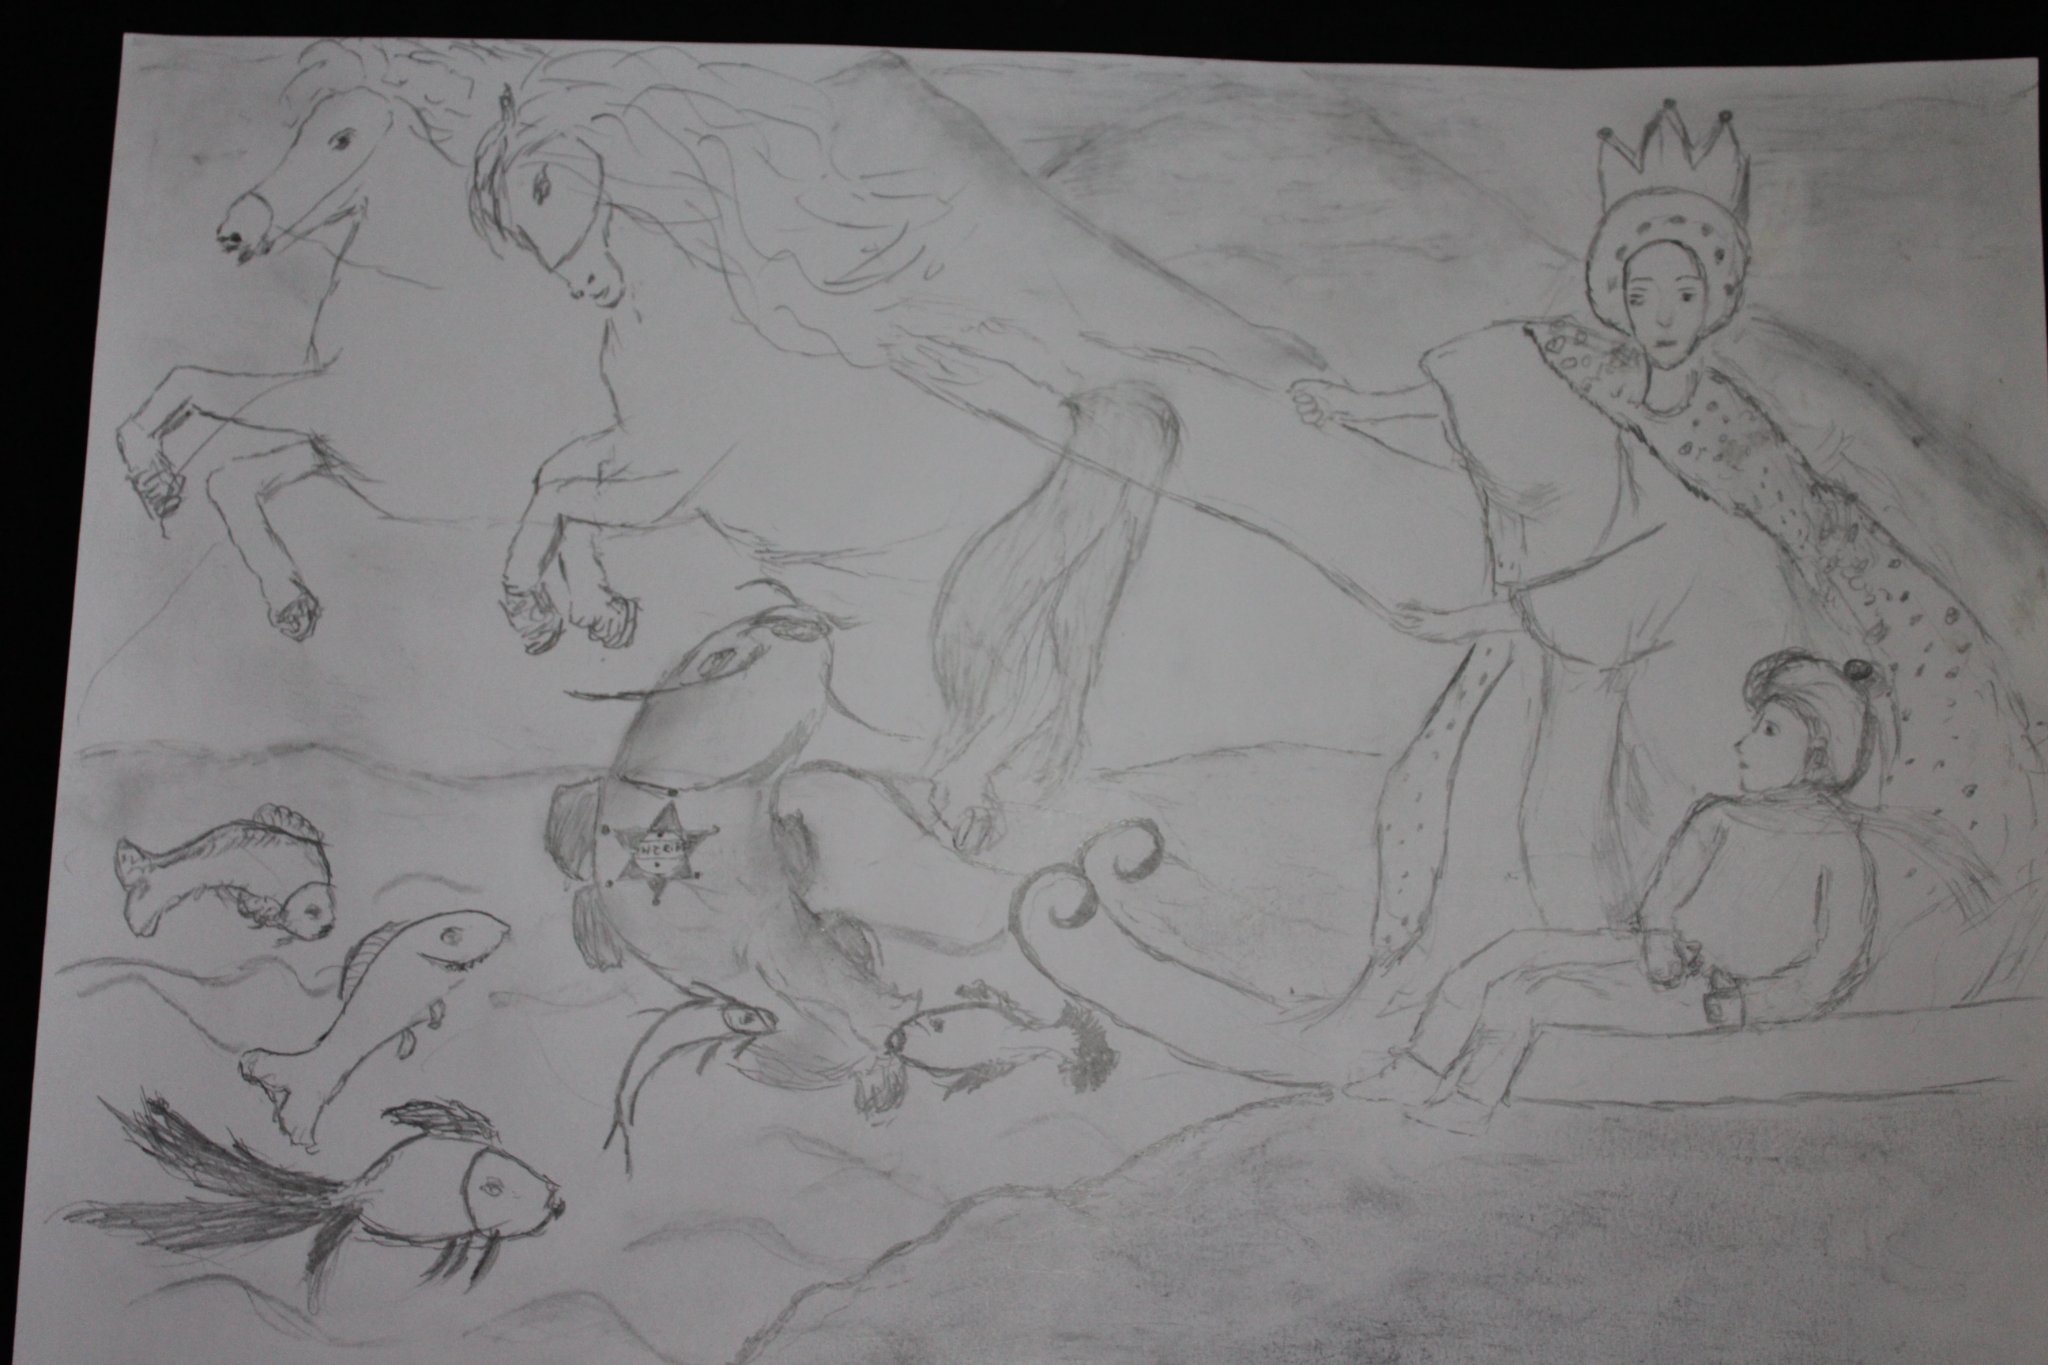 Czarno-biała praca rysowana ołówkiem. Król z młodym księciem na saniach ciągnięci przez konie przed nimi woda w której pływają ryby.